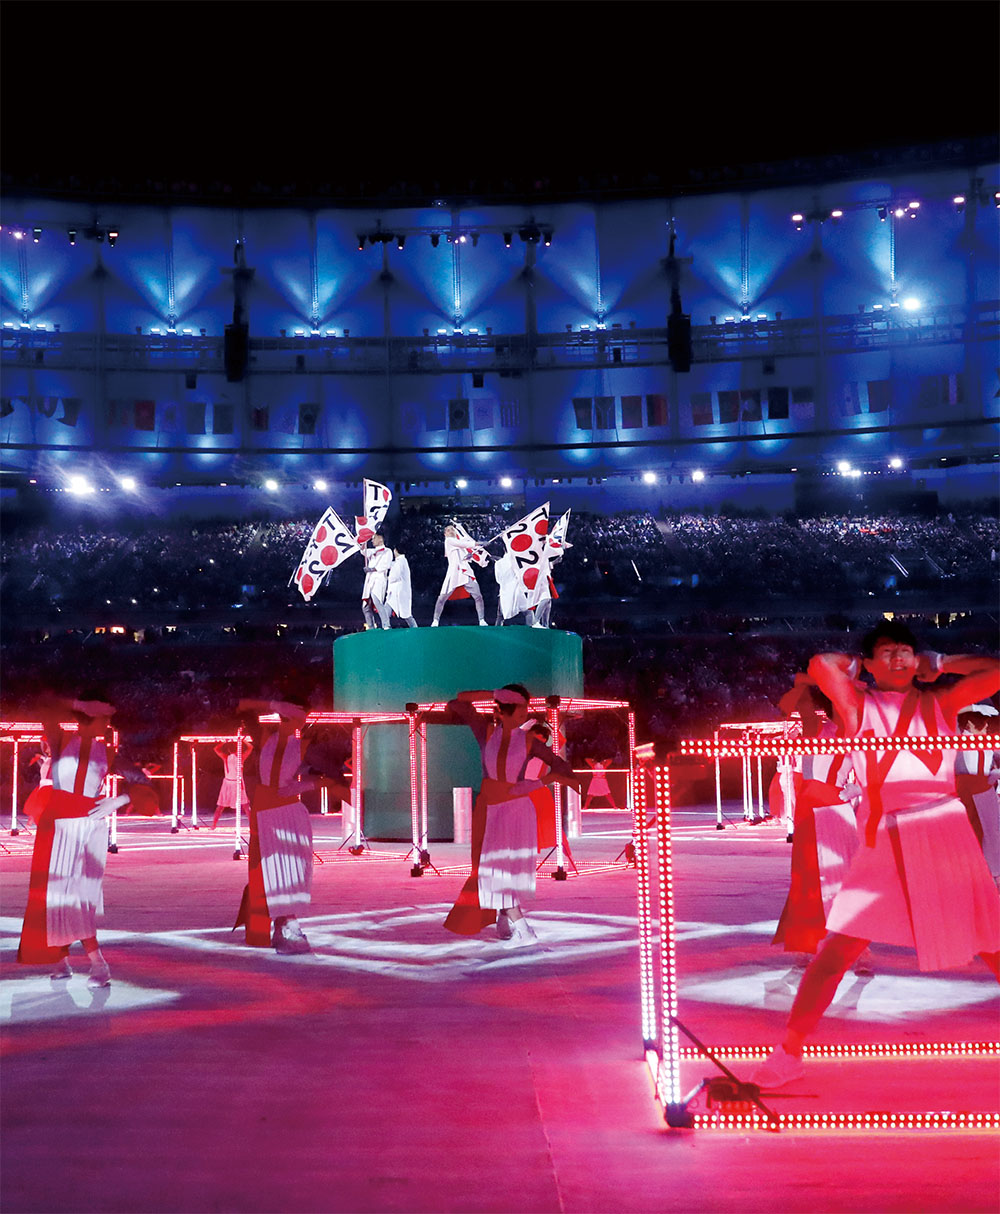 世界の観客が沸いた リオ大会 旗引き継ぎ式の舞台裏 前篇 ブレーンデジタル版